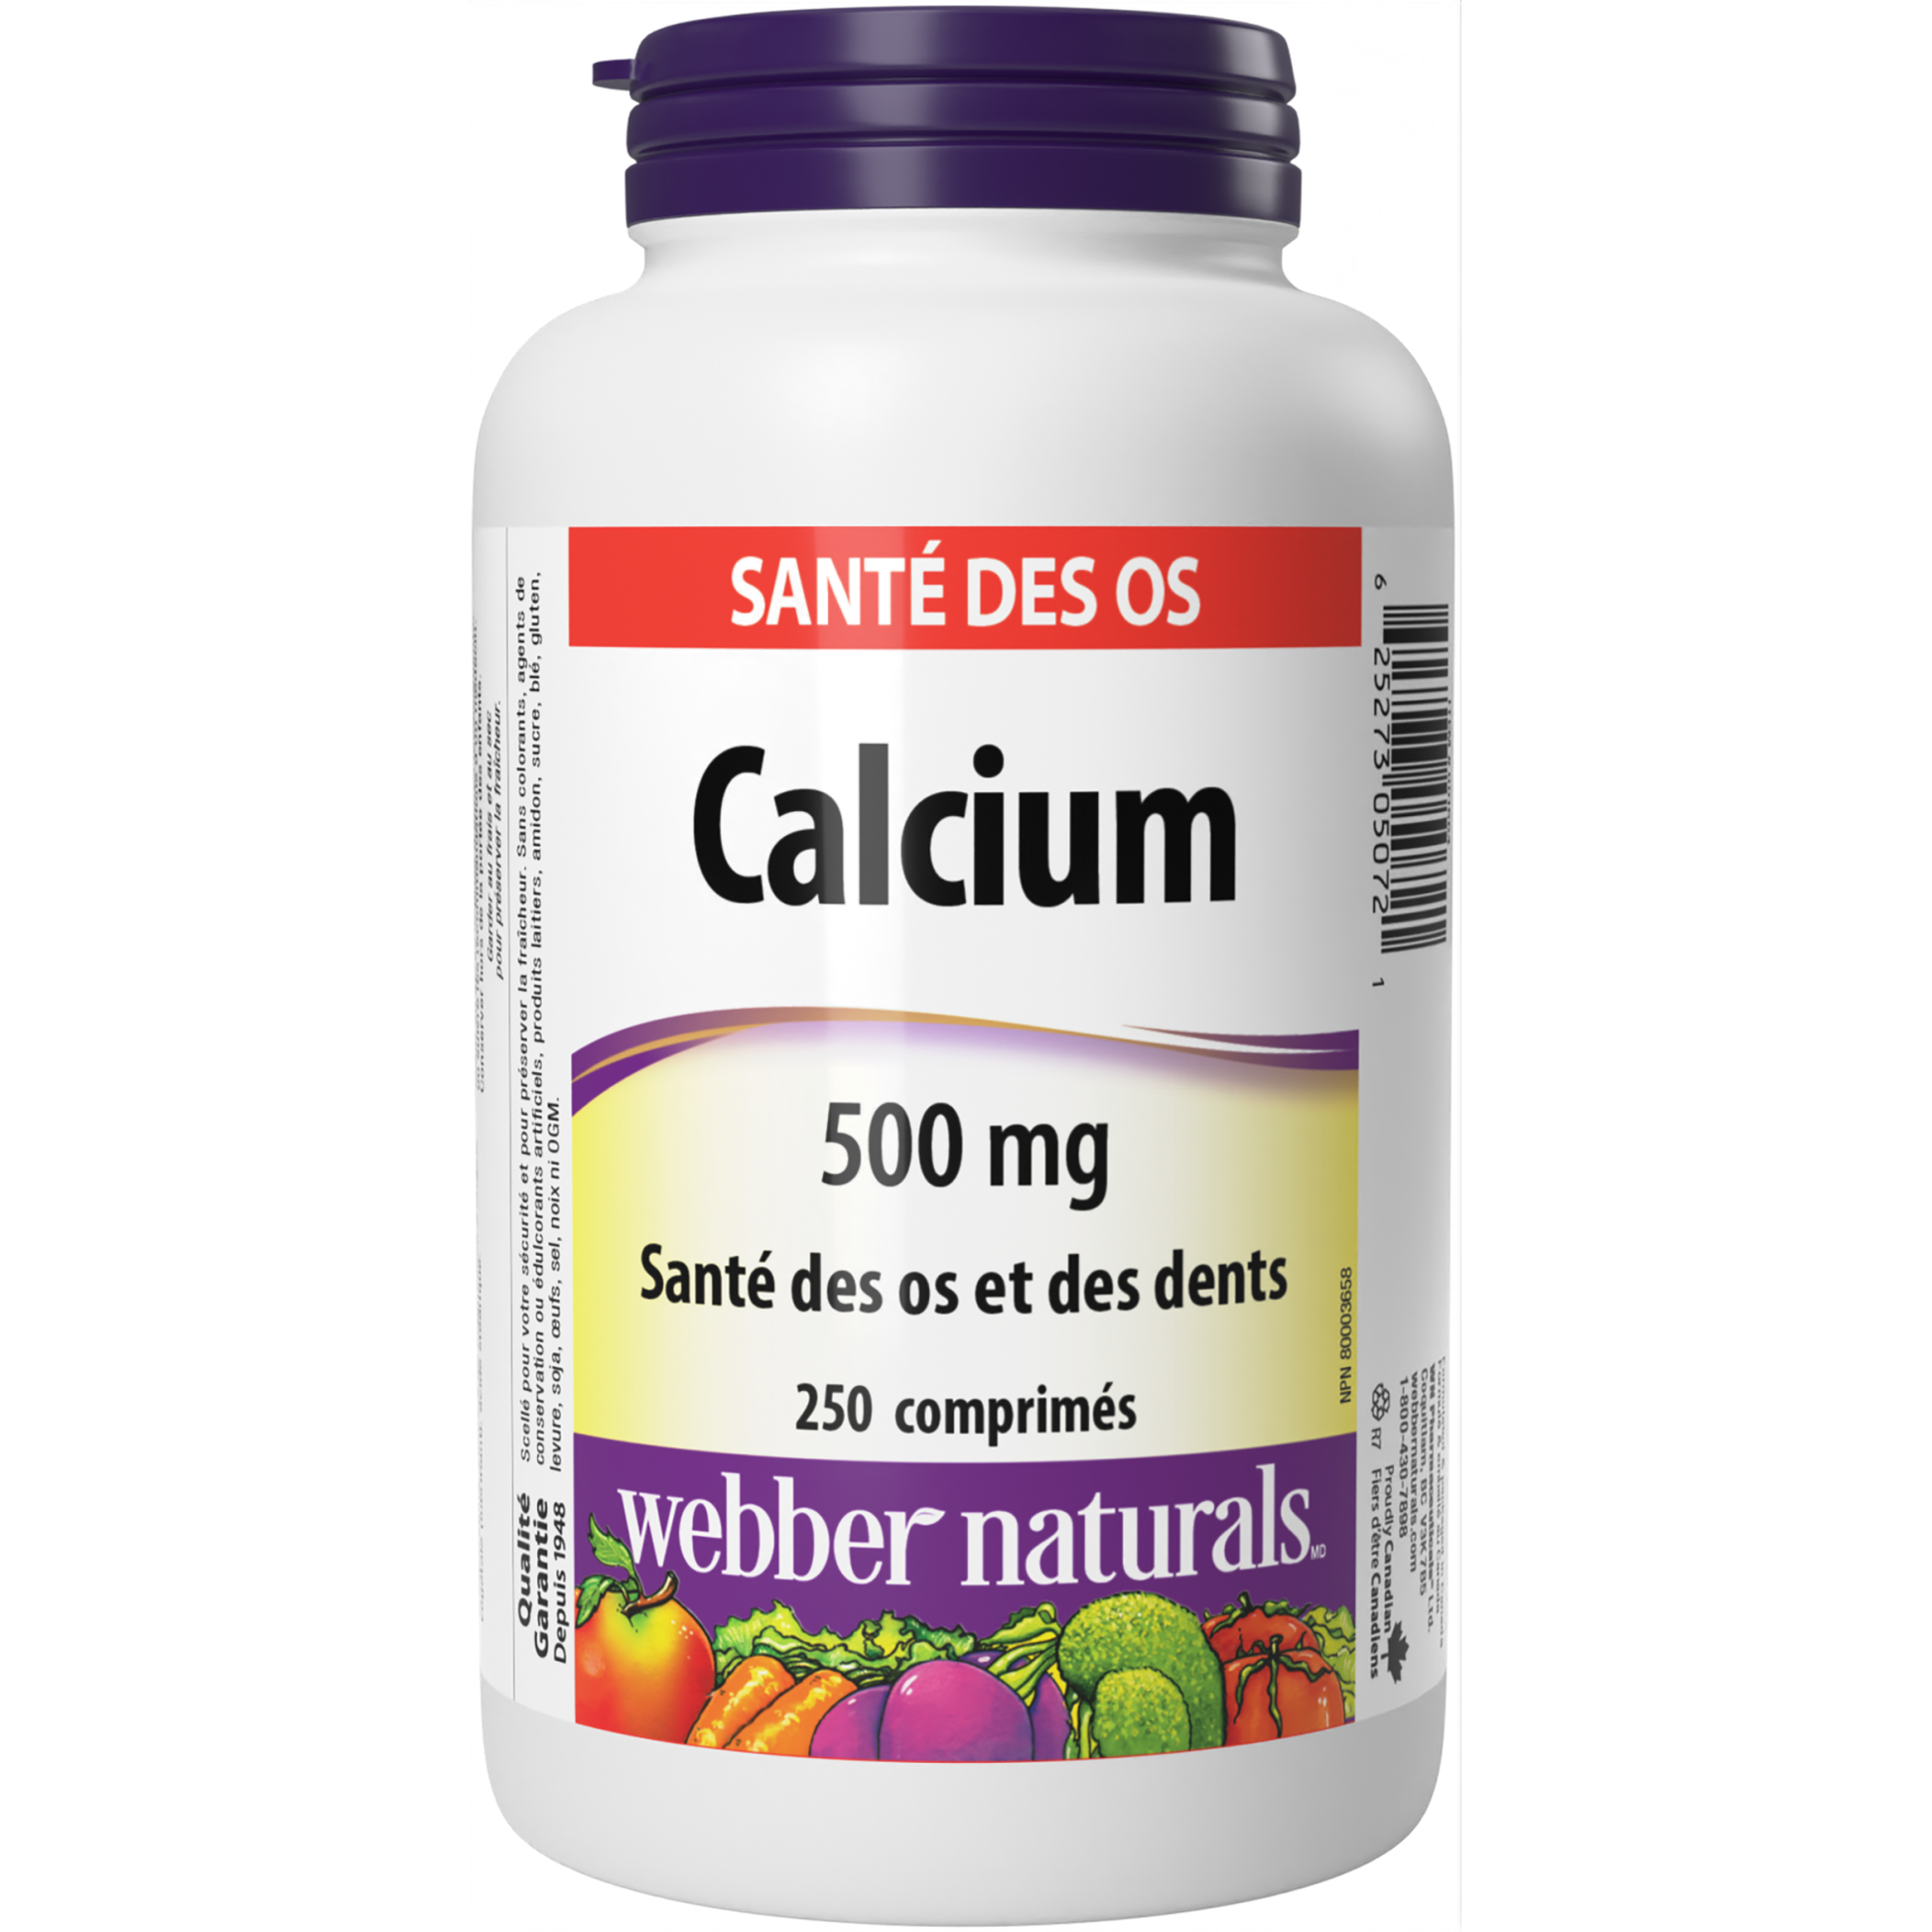 Calcium 500 mg for Webber Naturals|v|hi-res|WN5072